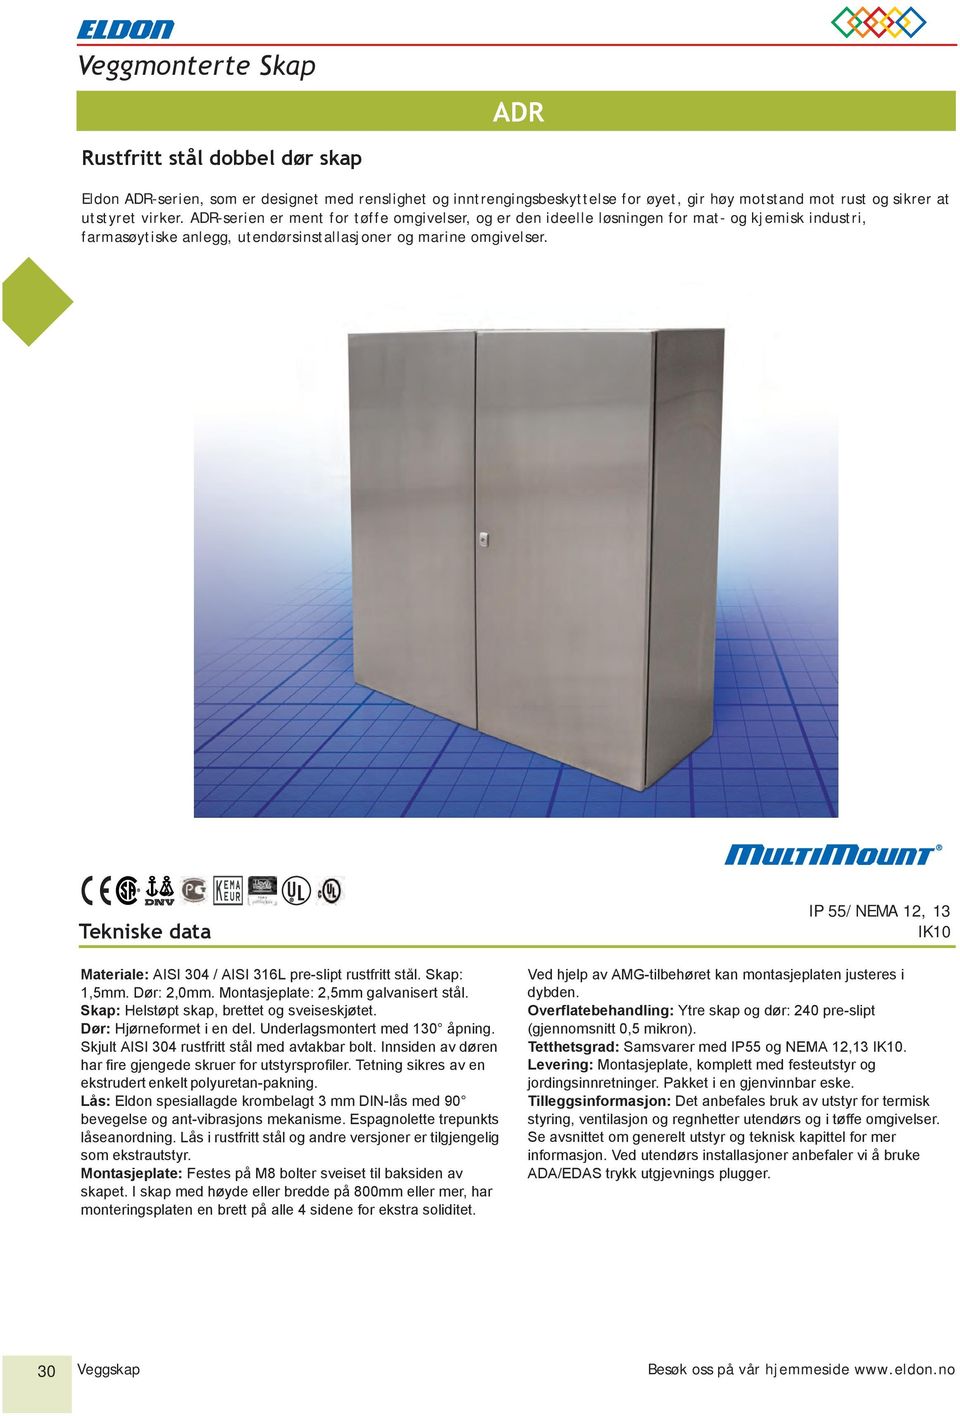 Tekniske data Materiale: AISI 304 / AISI 316L pre-slipt rustfritt stål. Skap: 1,5mm. Dør: 2,0mm. Montasjeplate: 2,5mm galvanisert stål. Skap: Helstøpt skap, brettet og sveiseskjøtet.